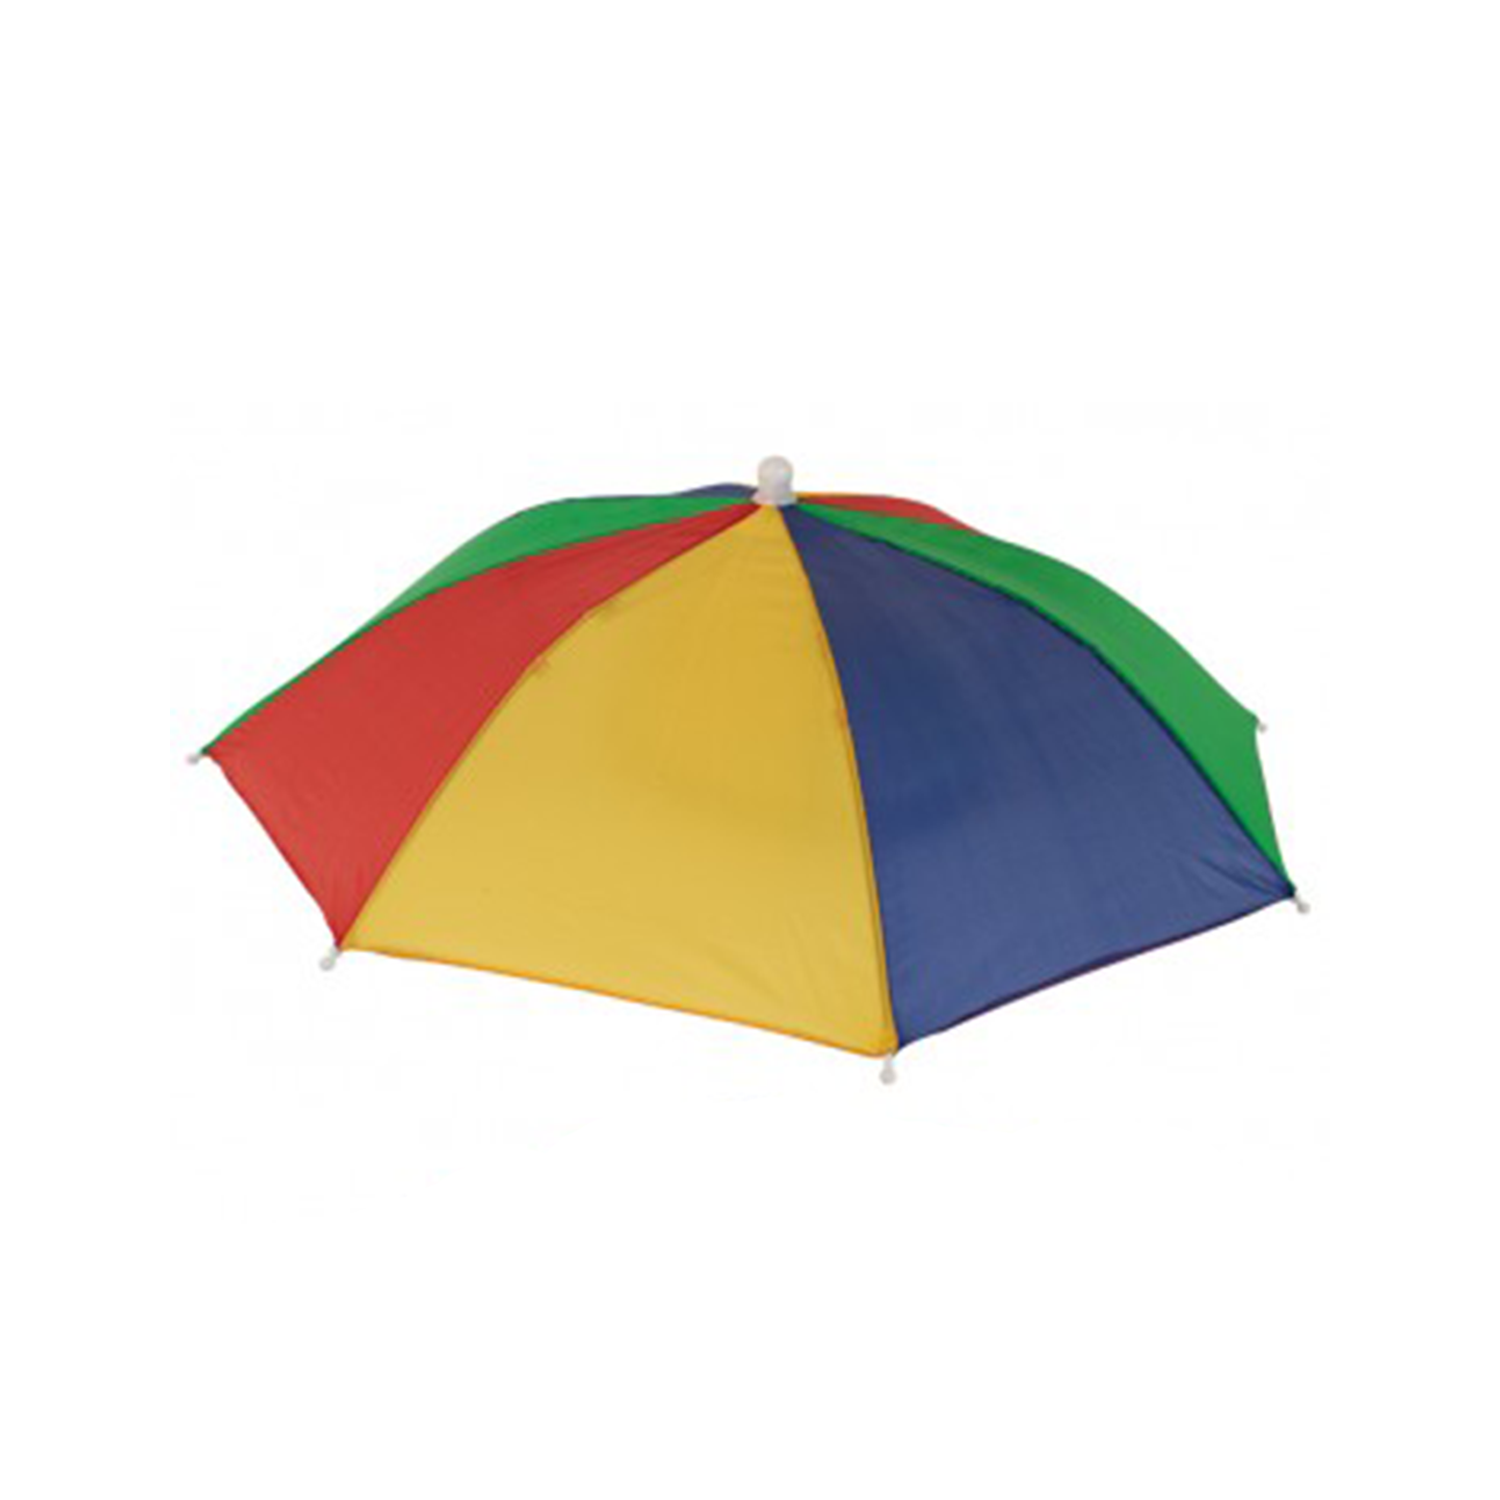 Hoofd paraplu gekleurd kopen